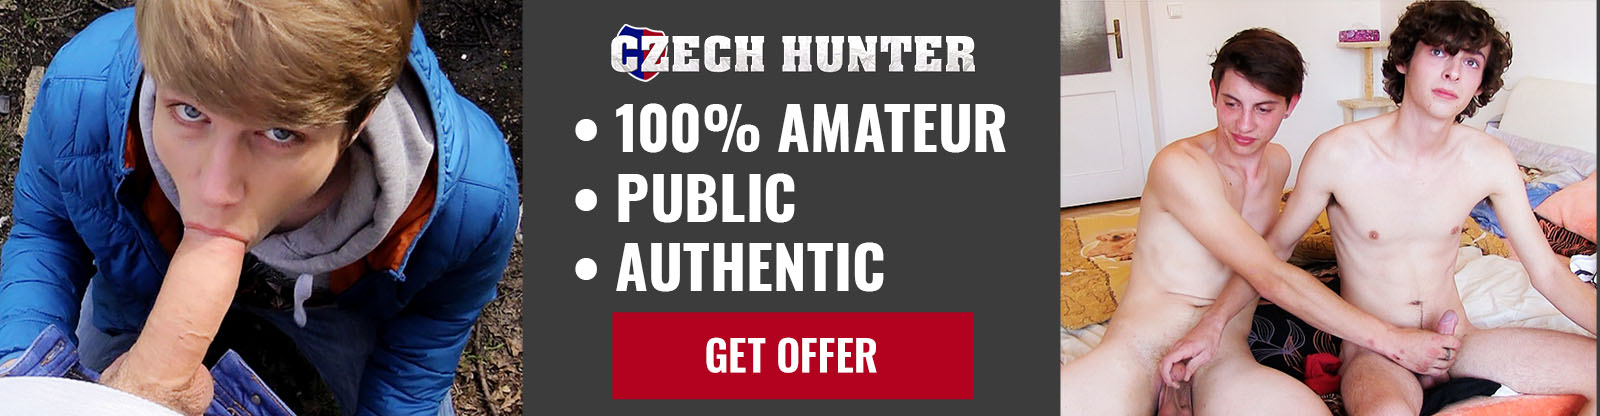 Czech Hunter